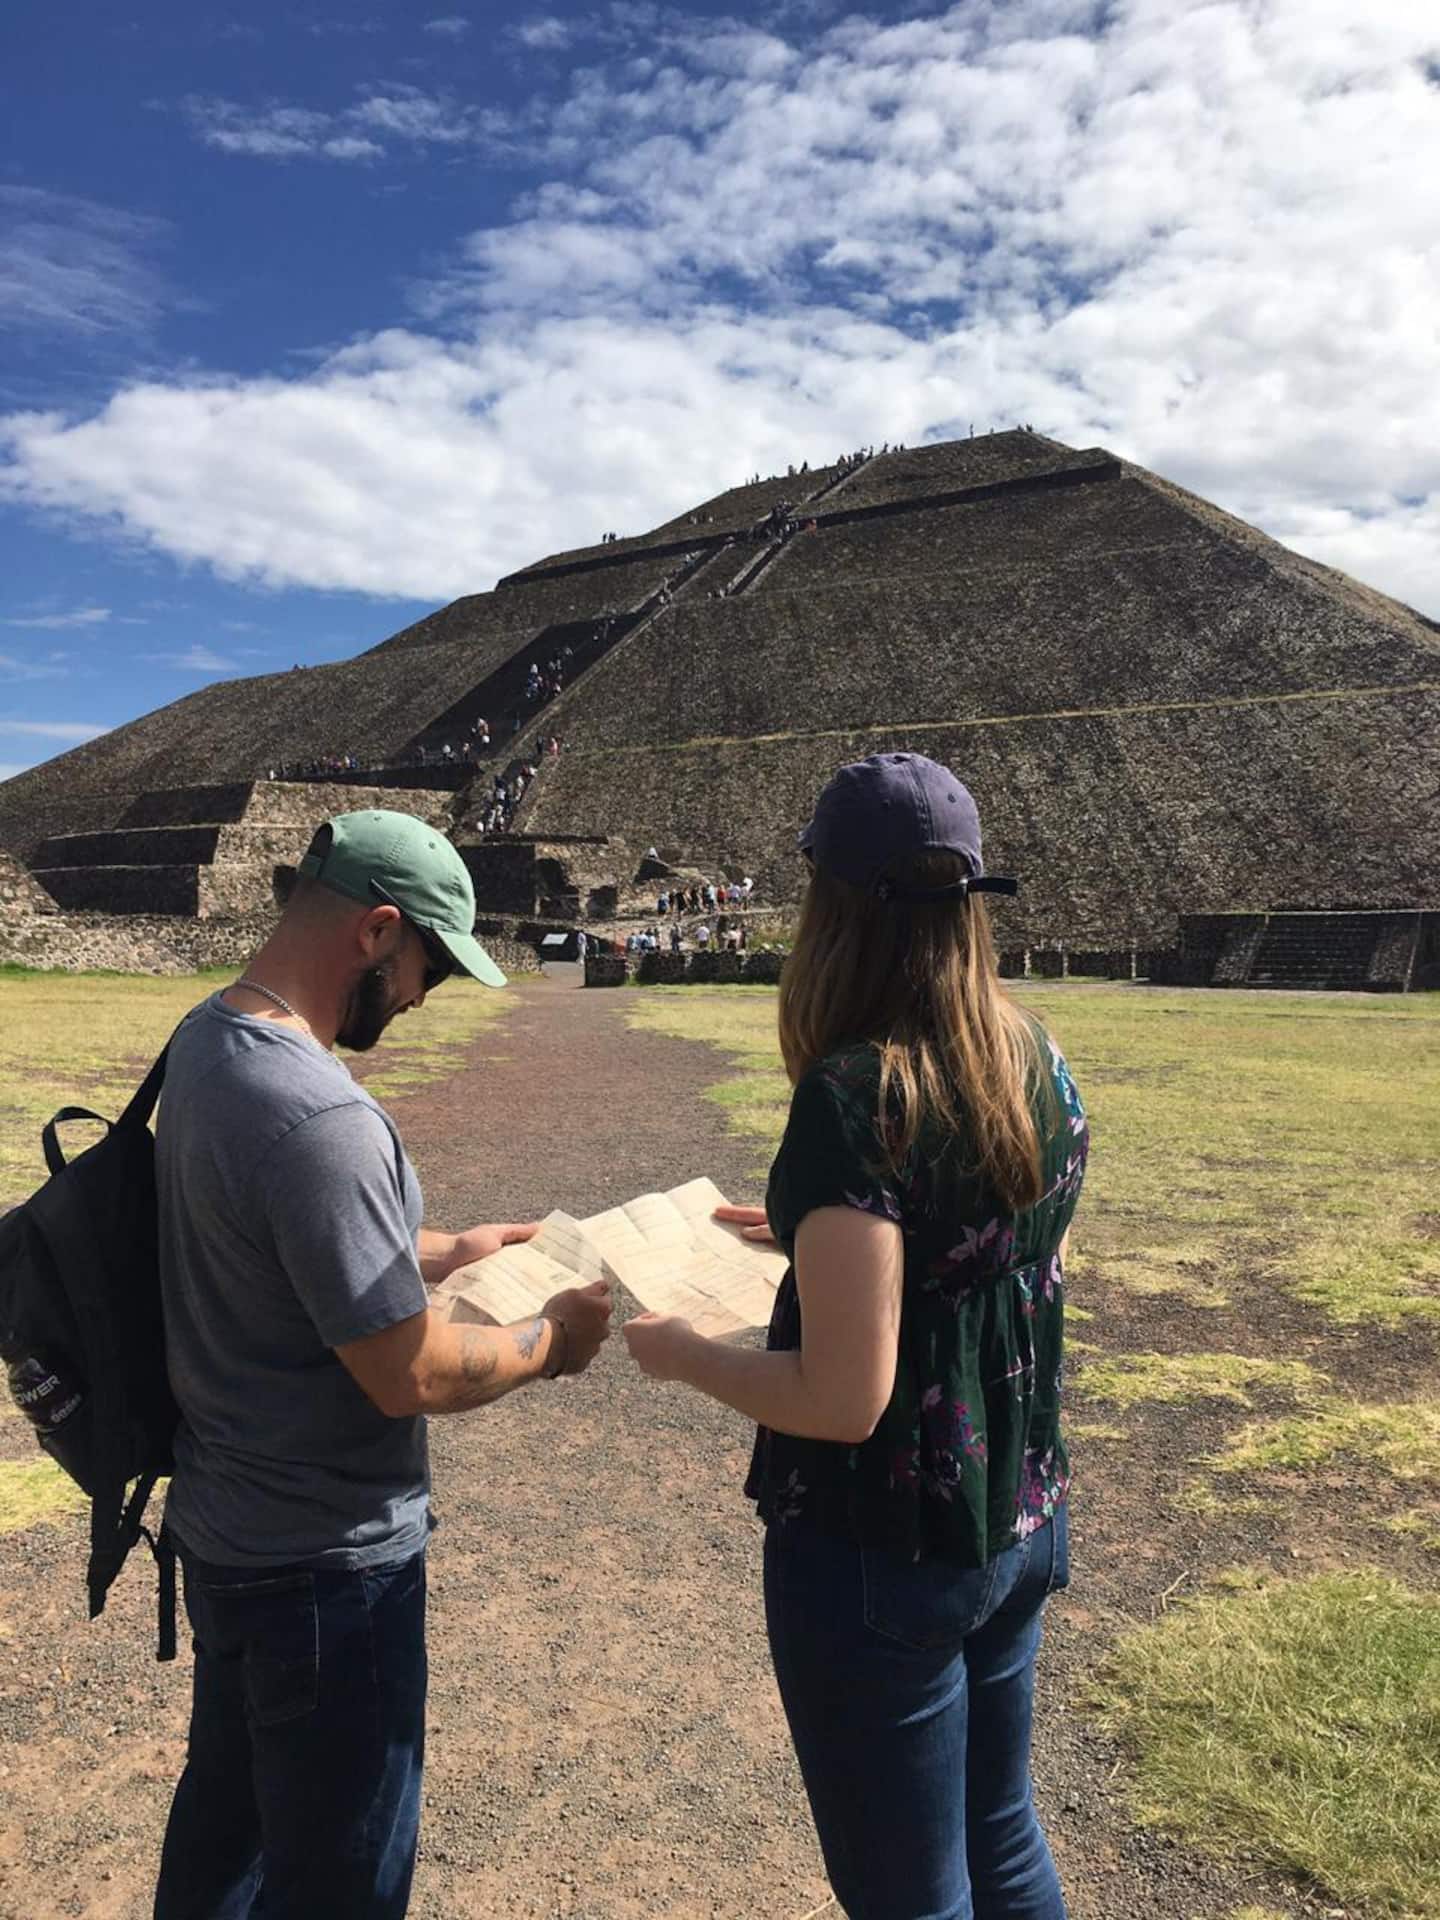 pyramids mexico tours